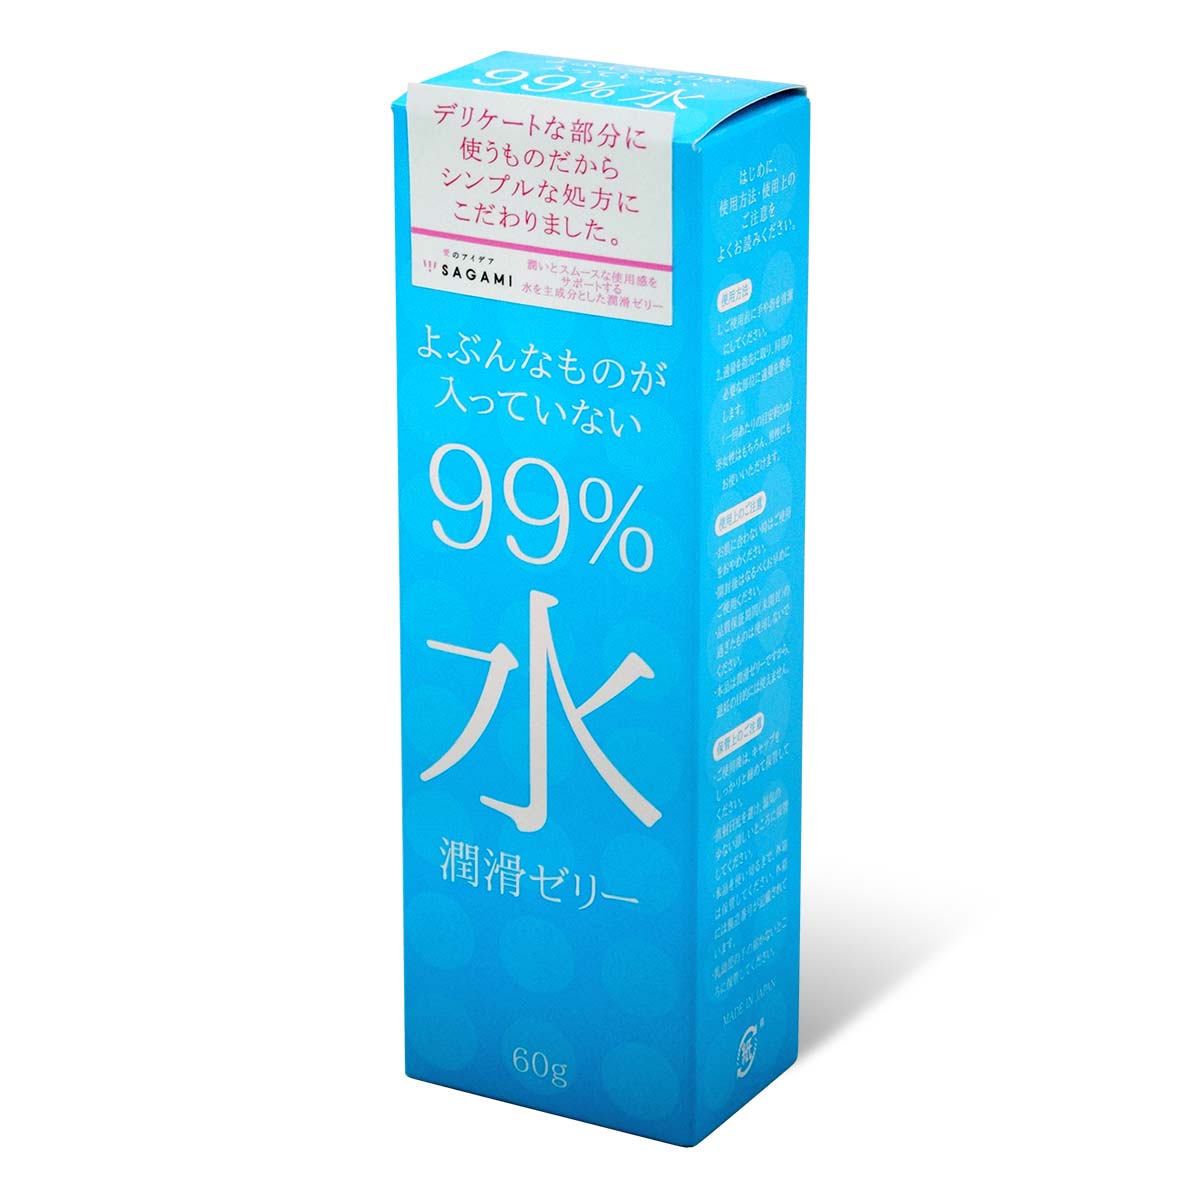 Sagami 99% Water Lubricating Gel 60g Water-based Lubricant-p_1